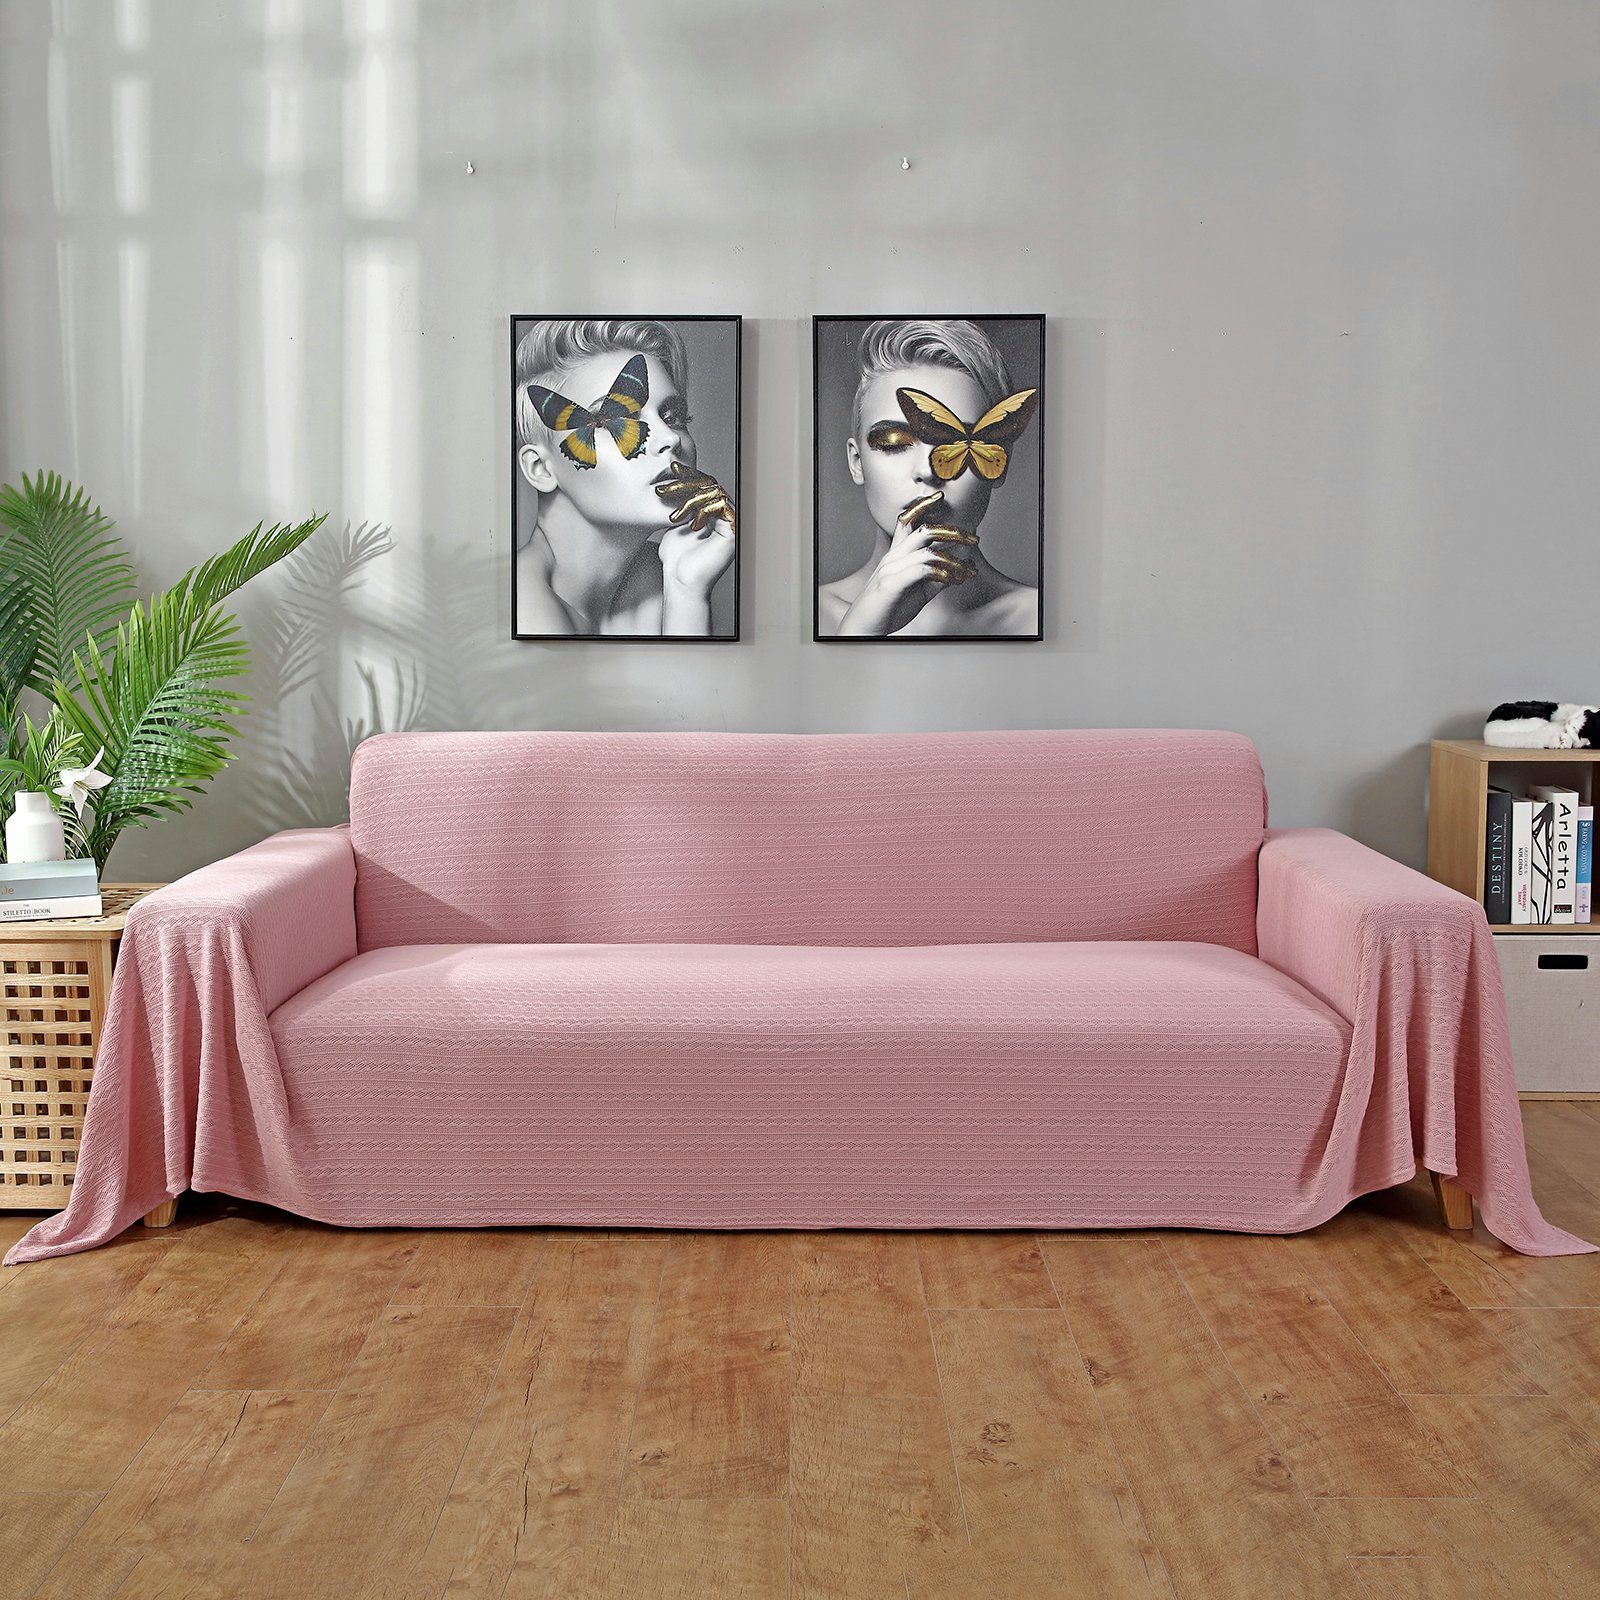 Farben -überwurf Flechten,1-3 Sofadecke,Couchschutz, Sofa, BTTO, 4 Sitz Pink Babydecke für Sofabezug,Gestrickte Sofahusse -bezug Sofadecke Tagesdecke